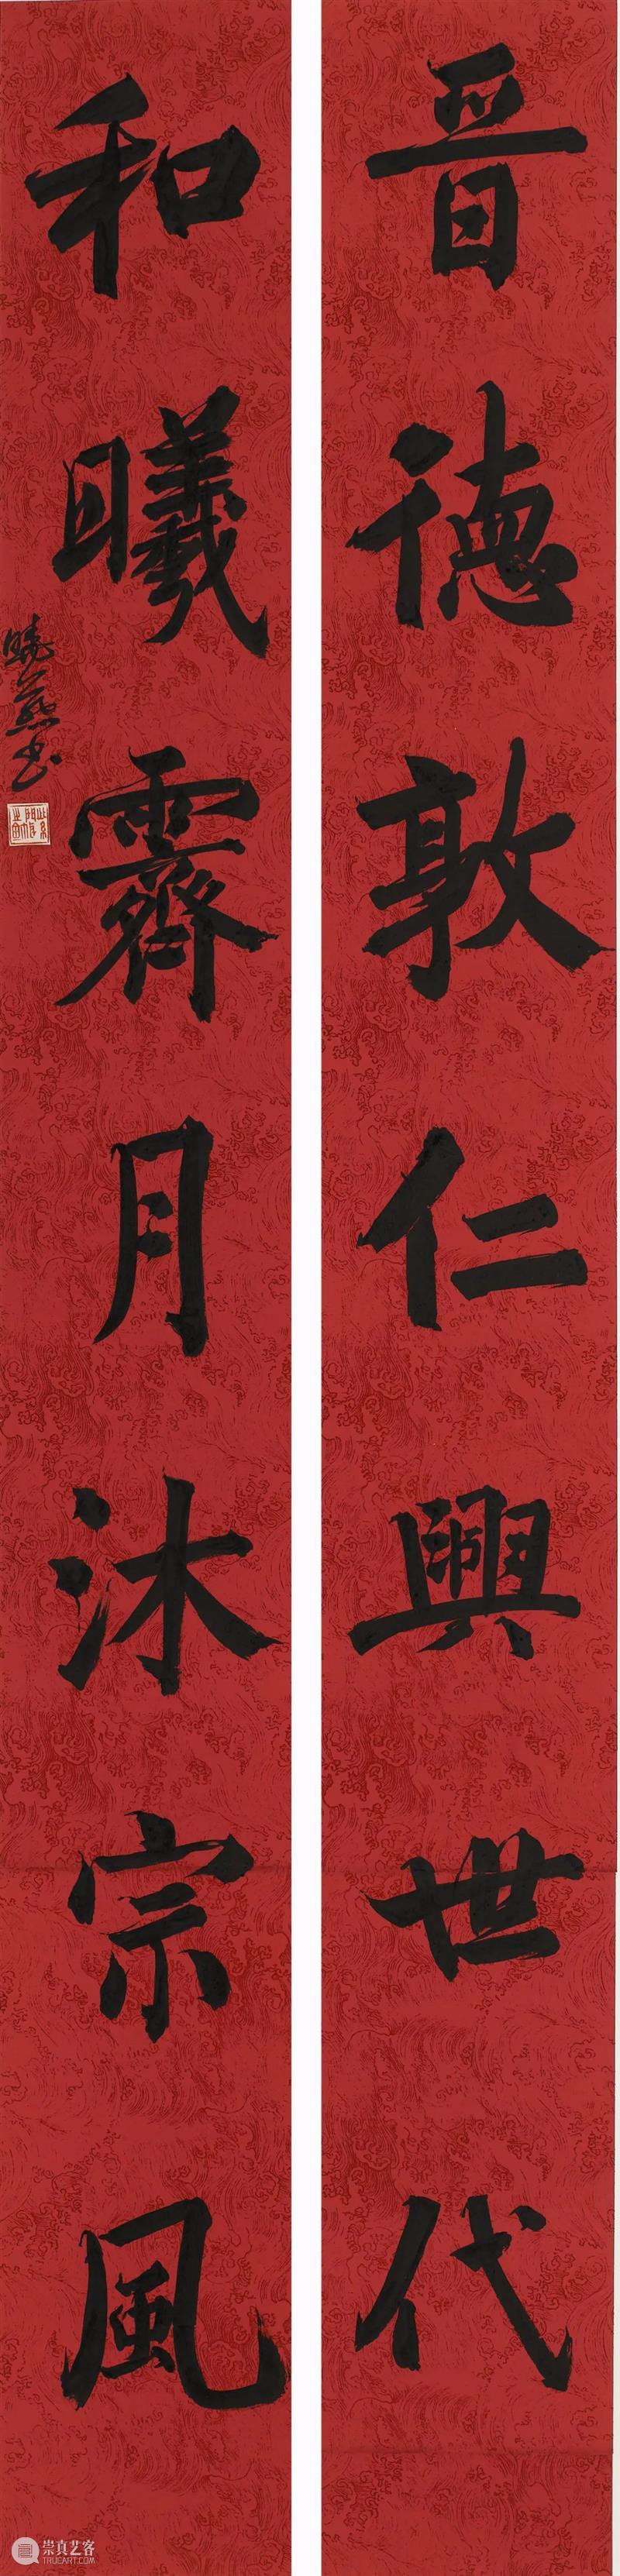 庆祝香港回归祖国25周年深圳书法作品邀请展在罗湖美术馆展出（含全部作品图） 崇真艺客